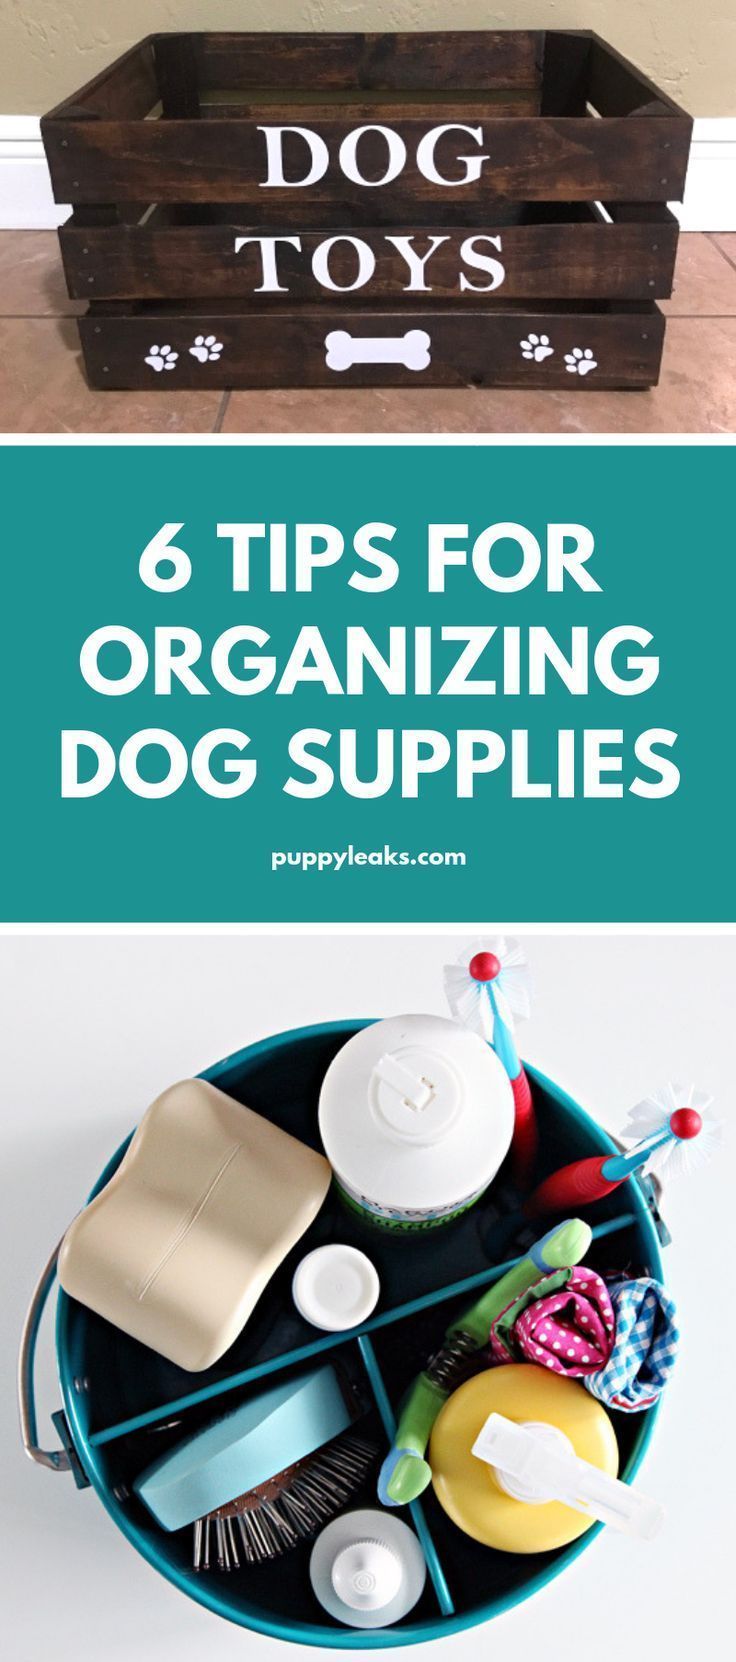 19 diy Dog organization ideas